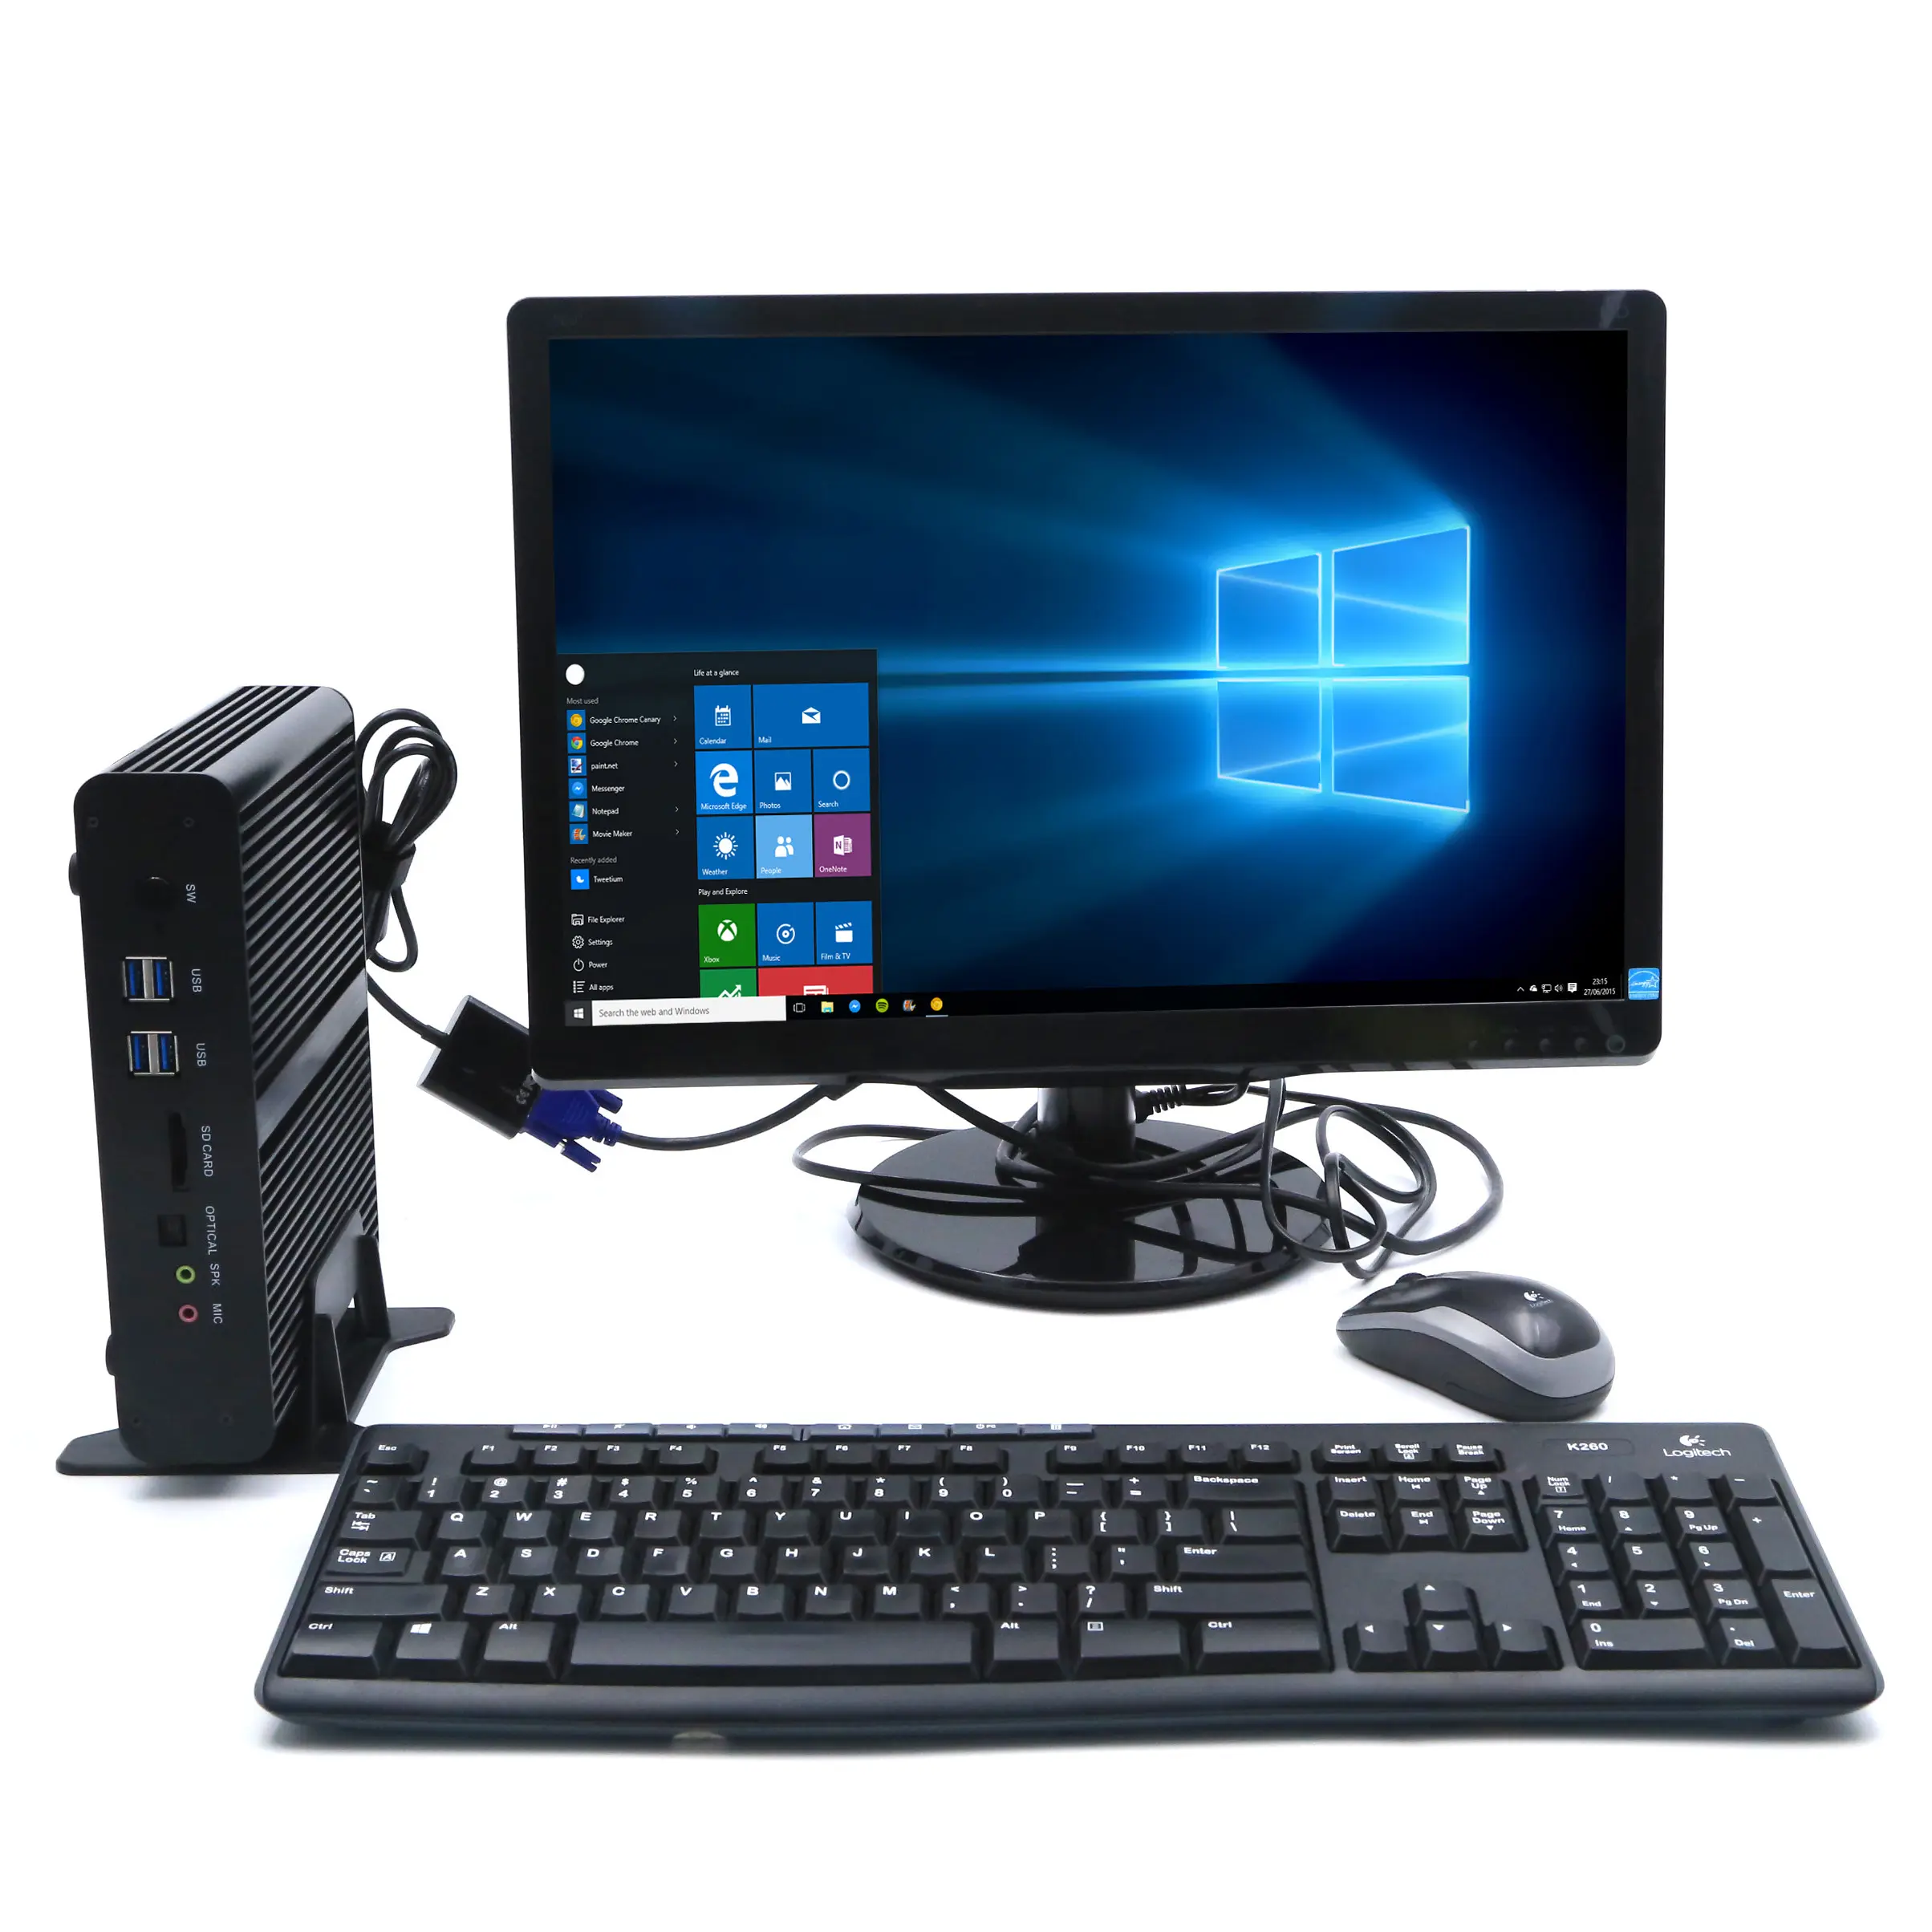 저렴한 인텔 코어 I7 4500u 데스크탑 컴퓨터 지원 2 * hd 듀얼 디스플레이 두 Lans 모두 미니 Pc 사무실